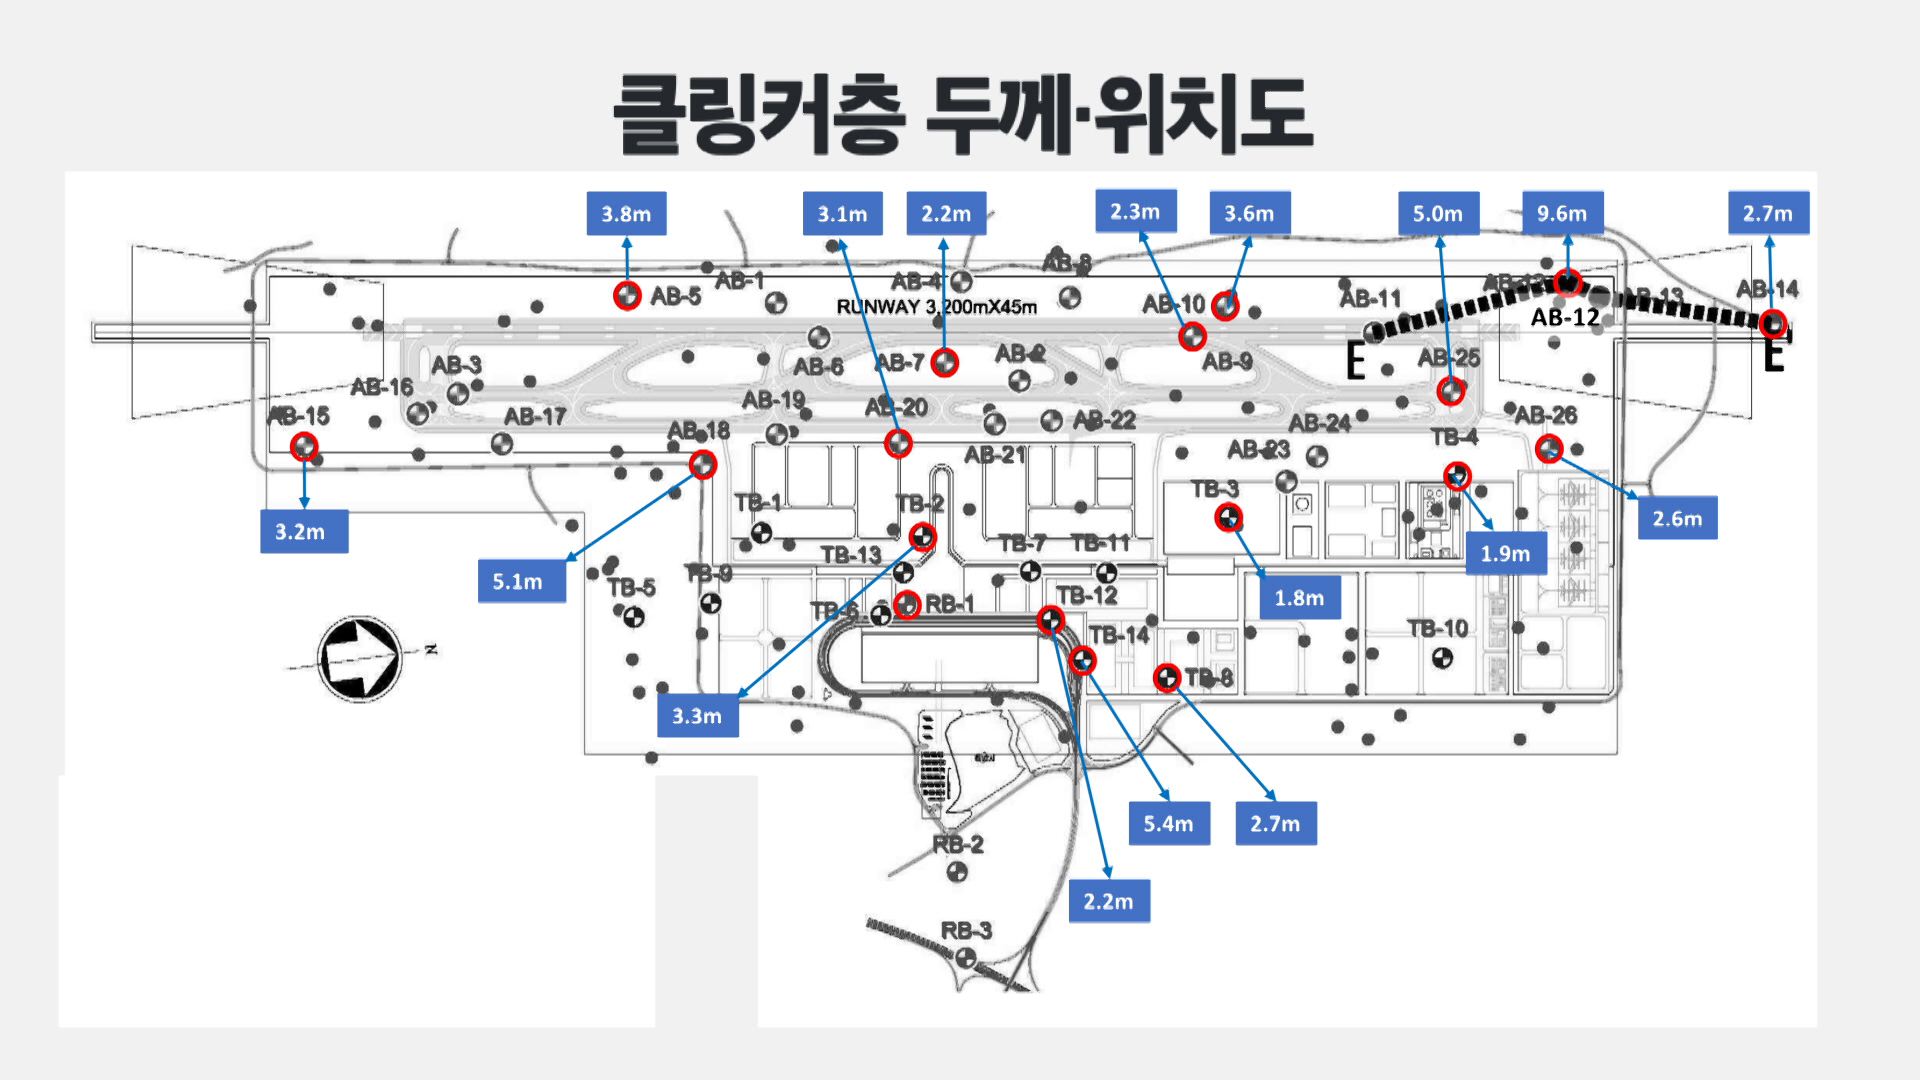 국토부의 제2공항 기본계획안 지반조사에서 확인된 클링커층 위치·두께